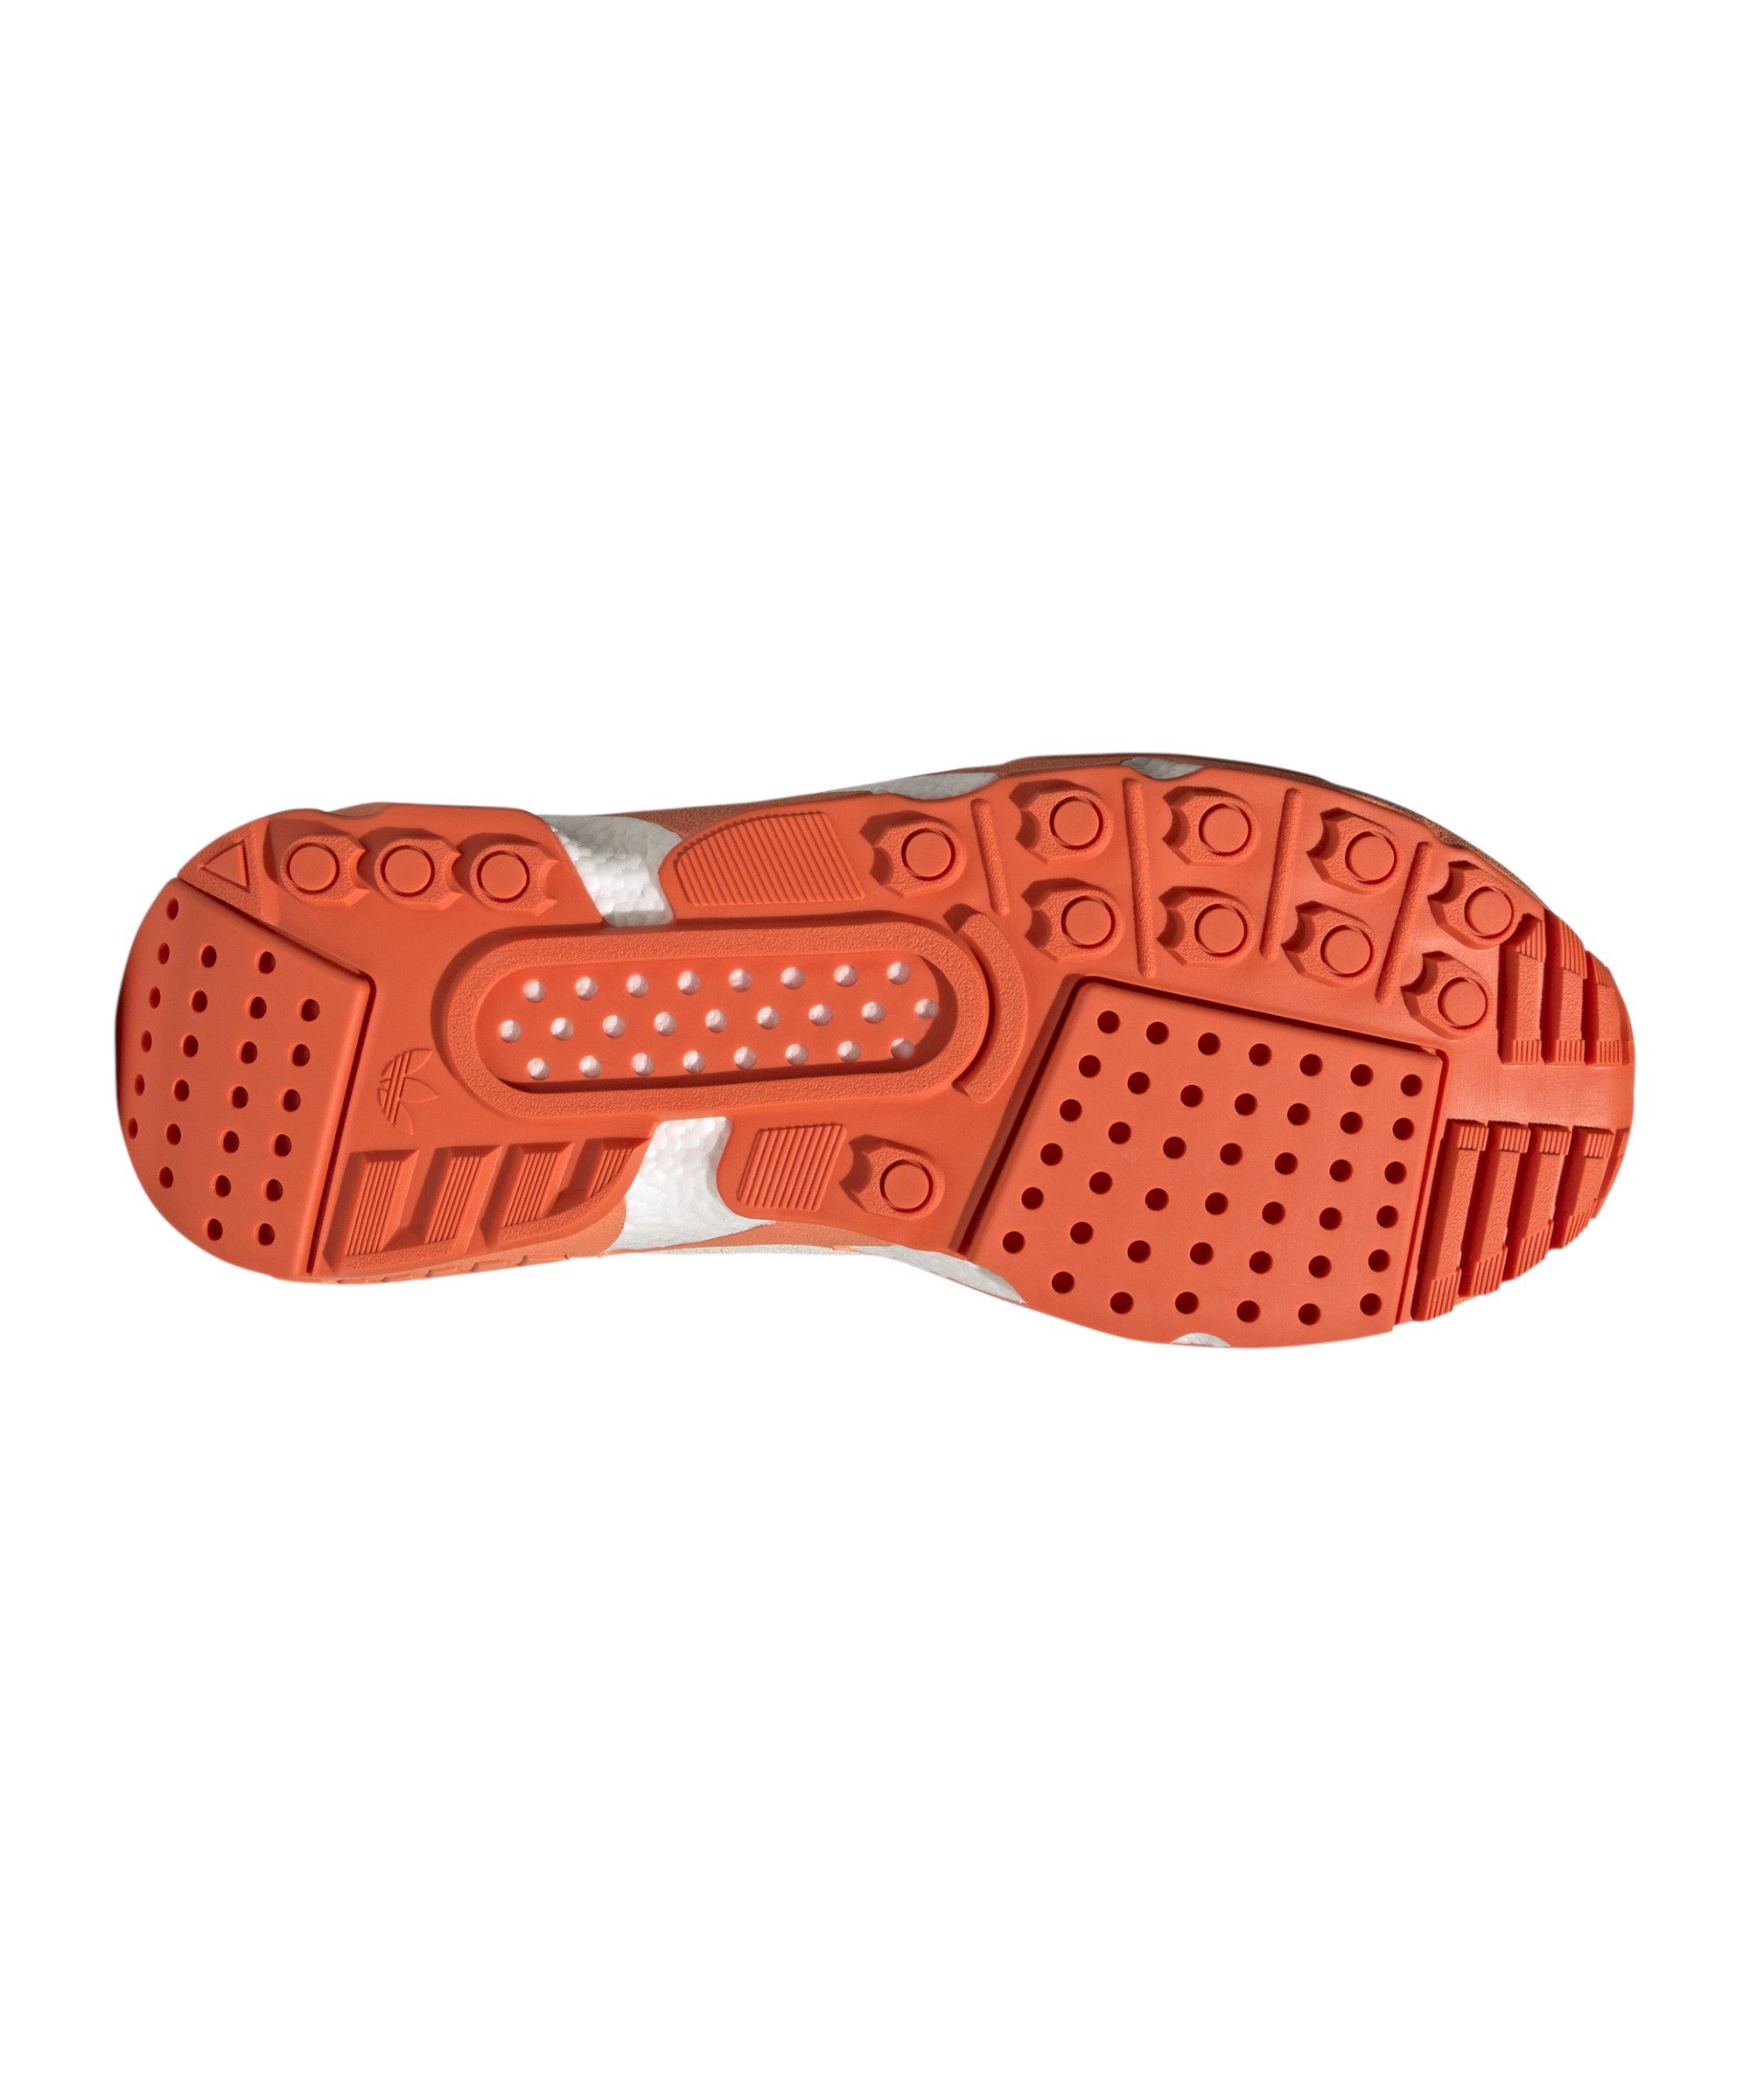 adidas Originals ZX 22 grauorange Boost Sneaker